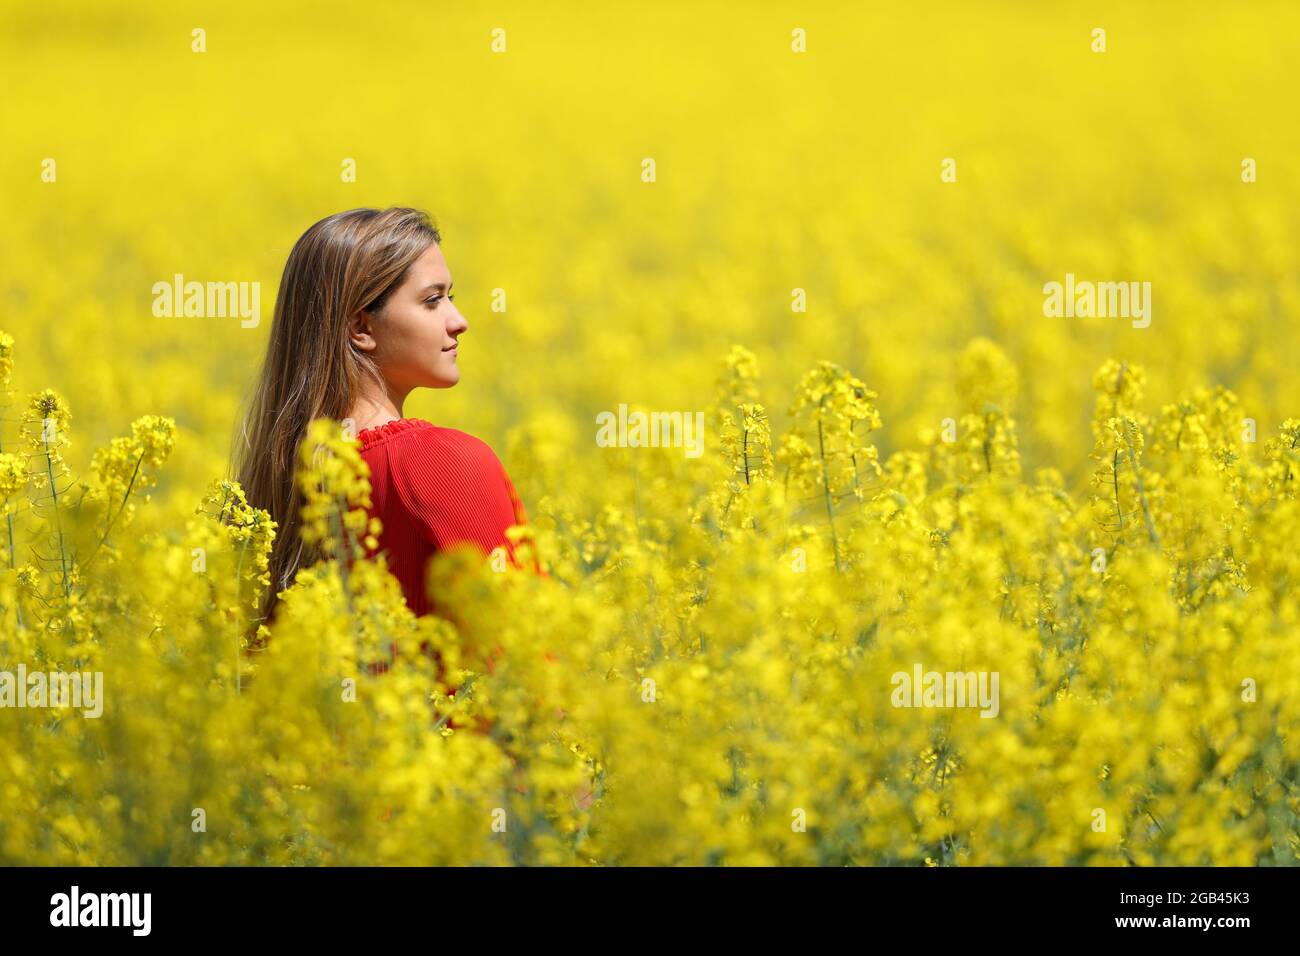 Frau in Rot, die in einem gelben Feld in der Frühjahrssaison nachdenkt Stockfoto